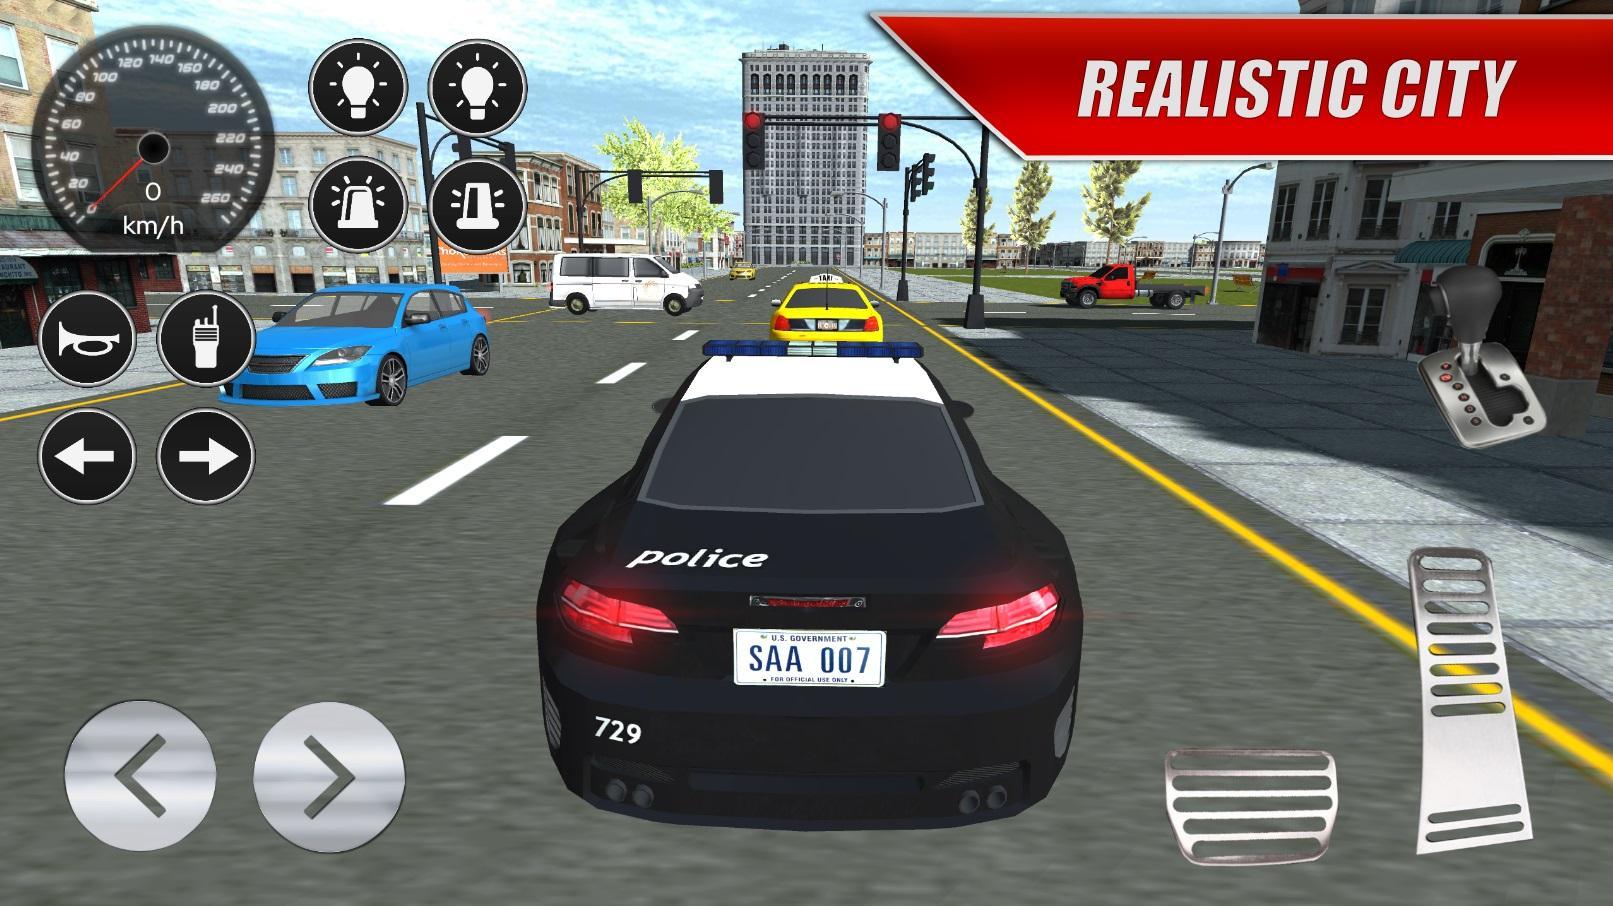 Screenshot 1 of 実際の警察の車の運転 v2 2.4